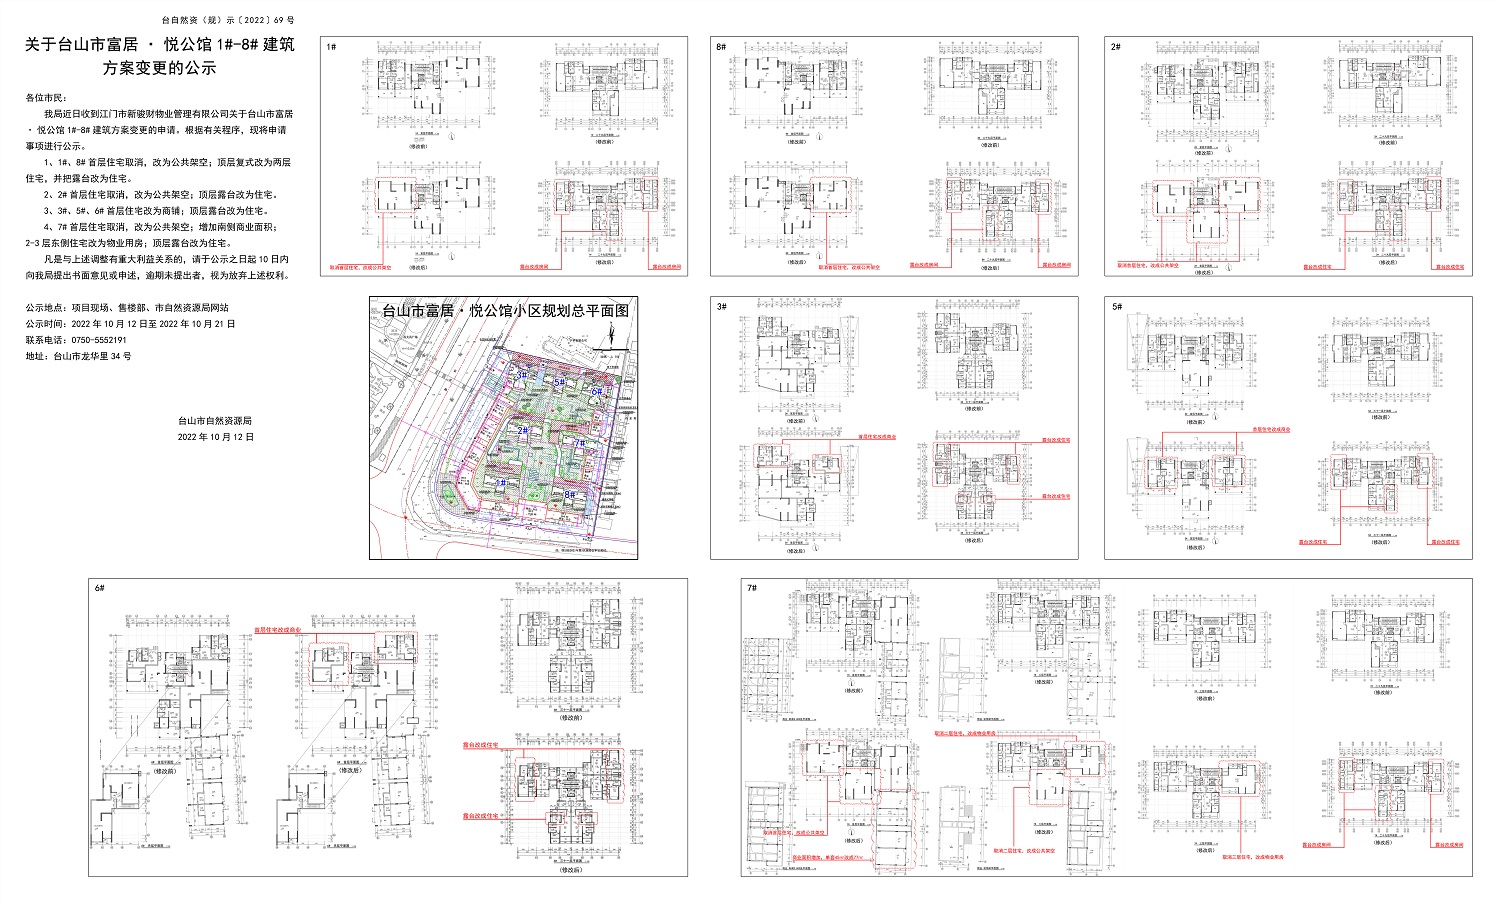 69关于台山市富居悦公馆1#-8#建筑方案变更的公示.jpg